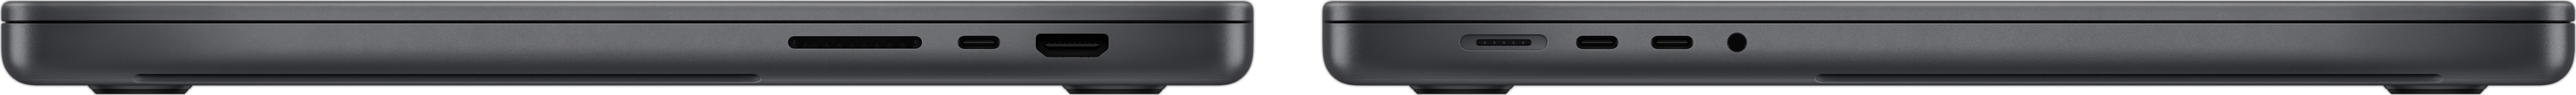 MacBook Pro sett fra siden, som viser SDXC-kortplassen, tre Thunderbolt 4-porter, HDMI-porten, MagSafe 3-ladeporten og hodetelefonutgangen.